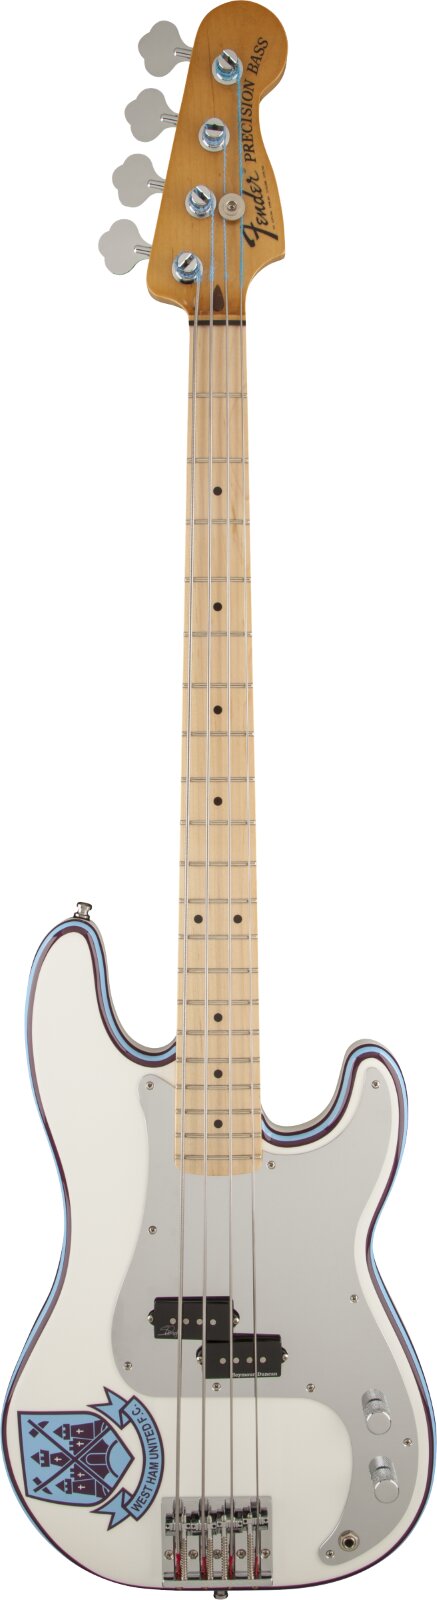 Fender Steve Harris Precision Bass Mapple Griffbrett Olympic White : photo 1